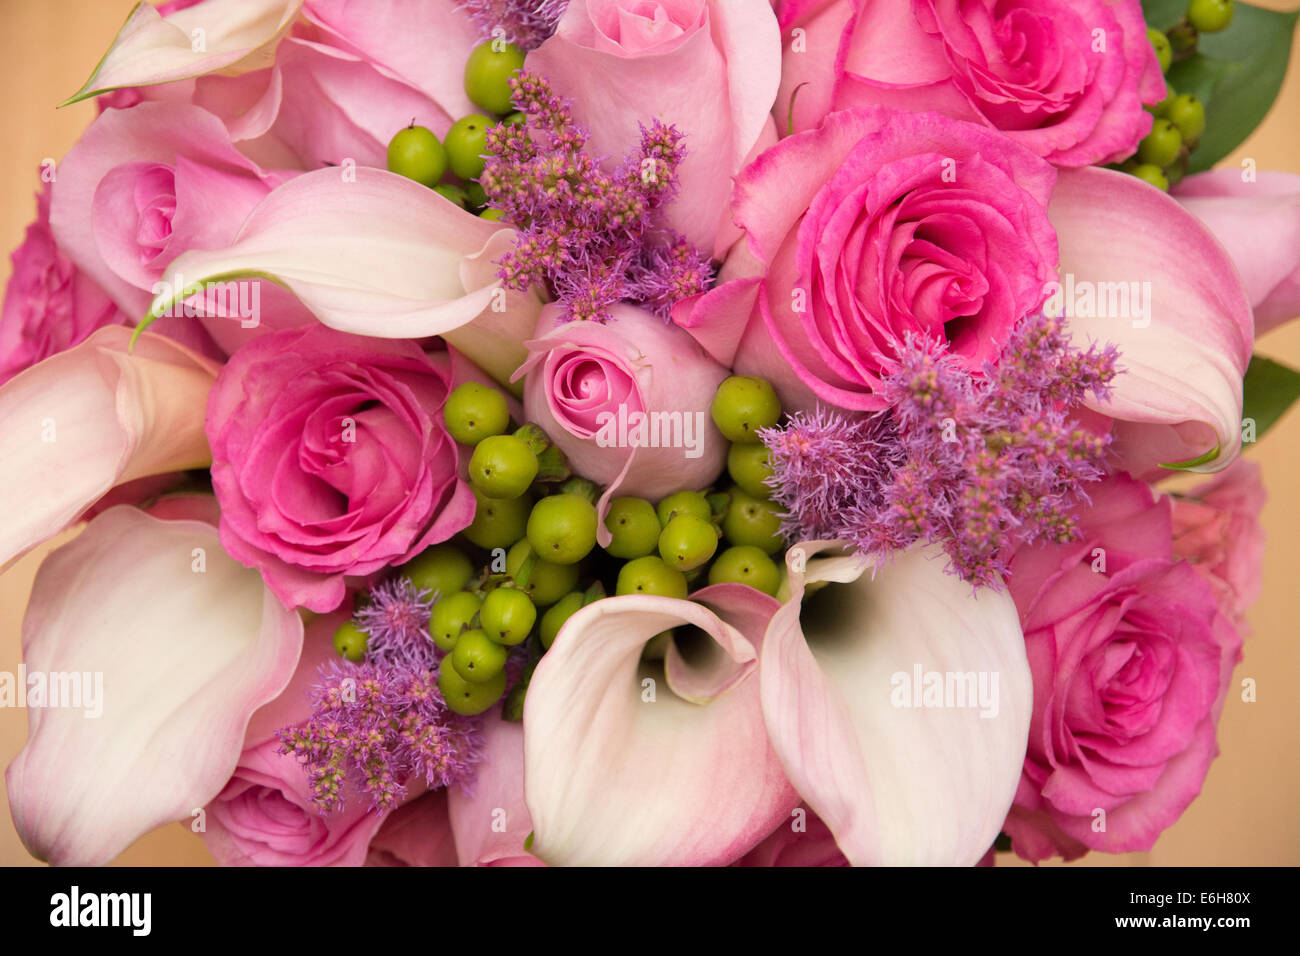 Un ramo de flores en bellos colores rosas - rosas y calla lirios. Foto de stock